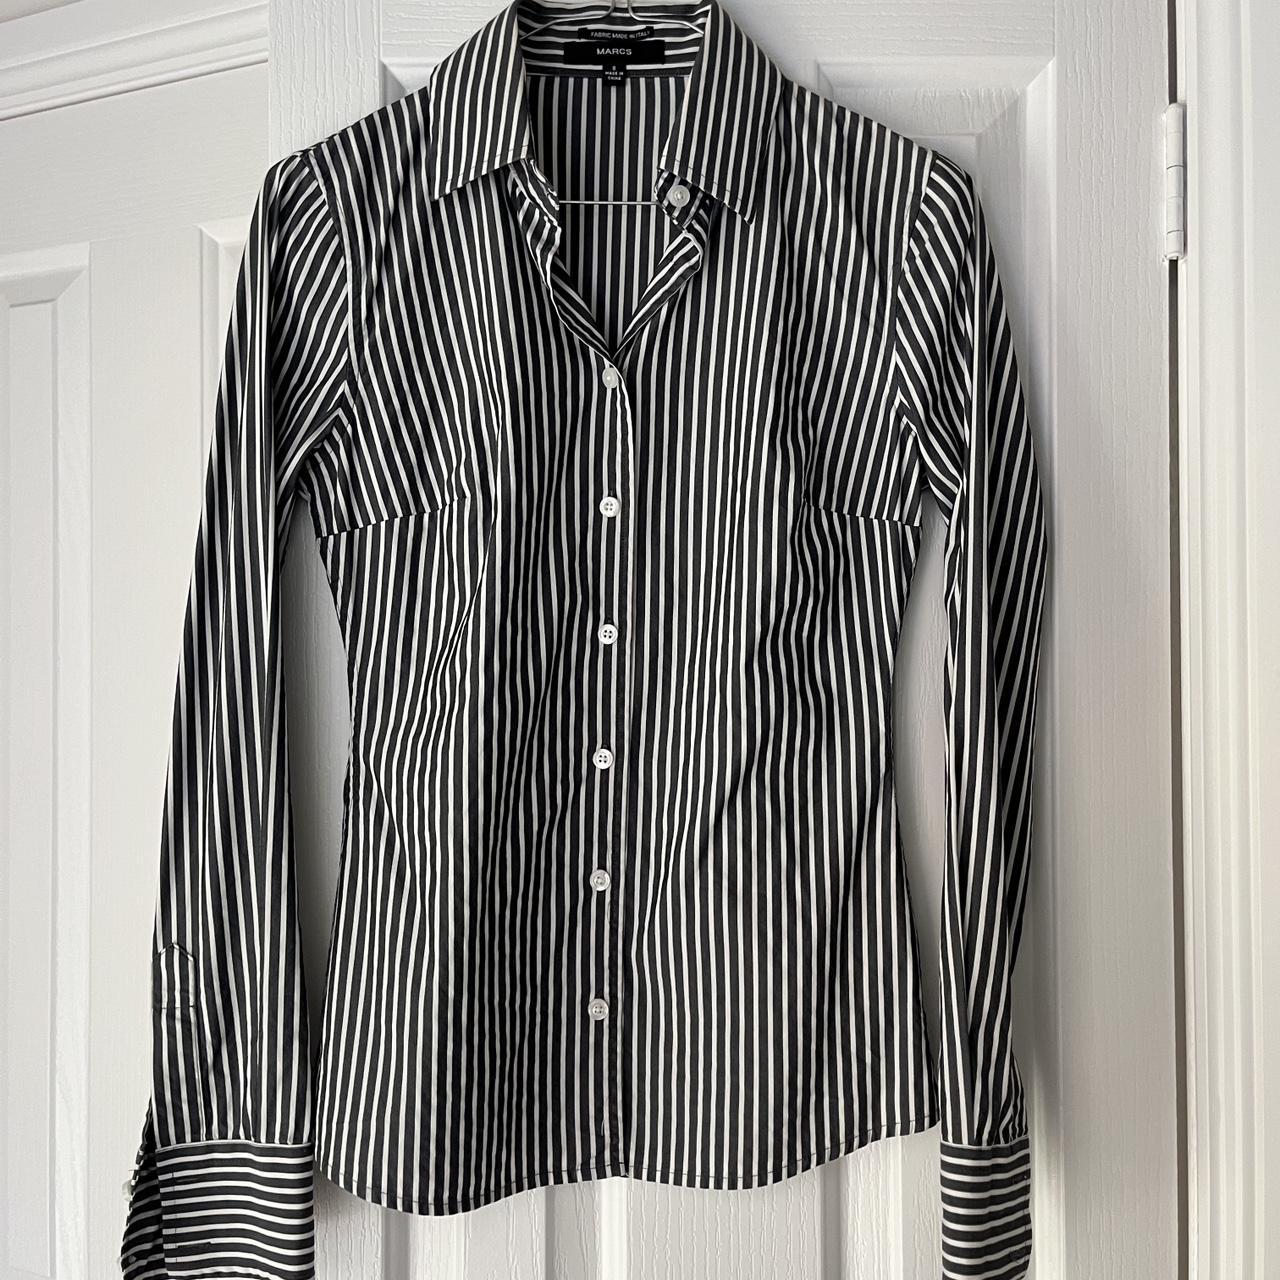 MARCS Stripe Button Up Shirt Size 6 (Runs small /... - Depop